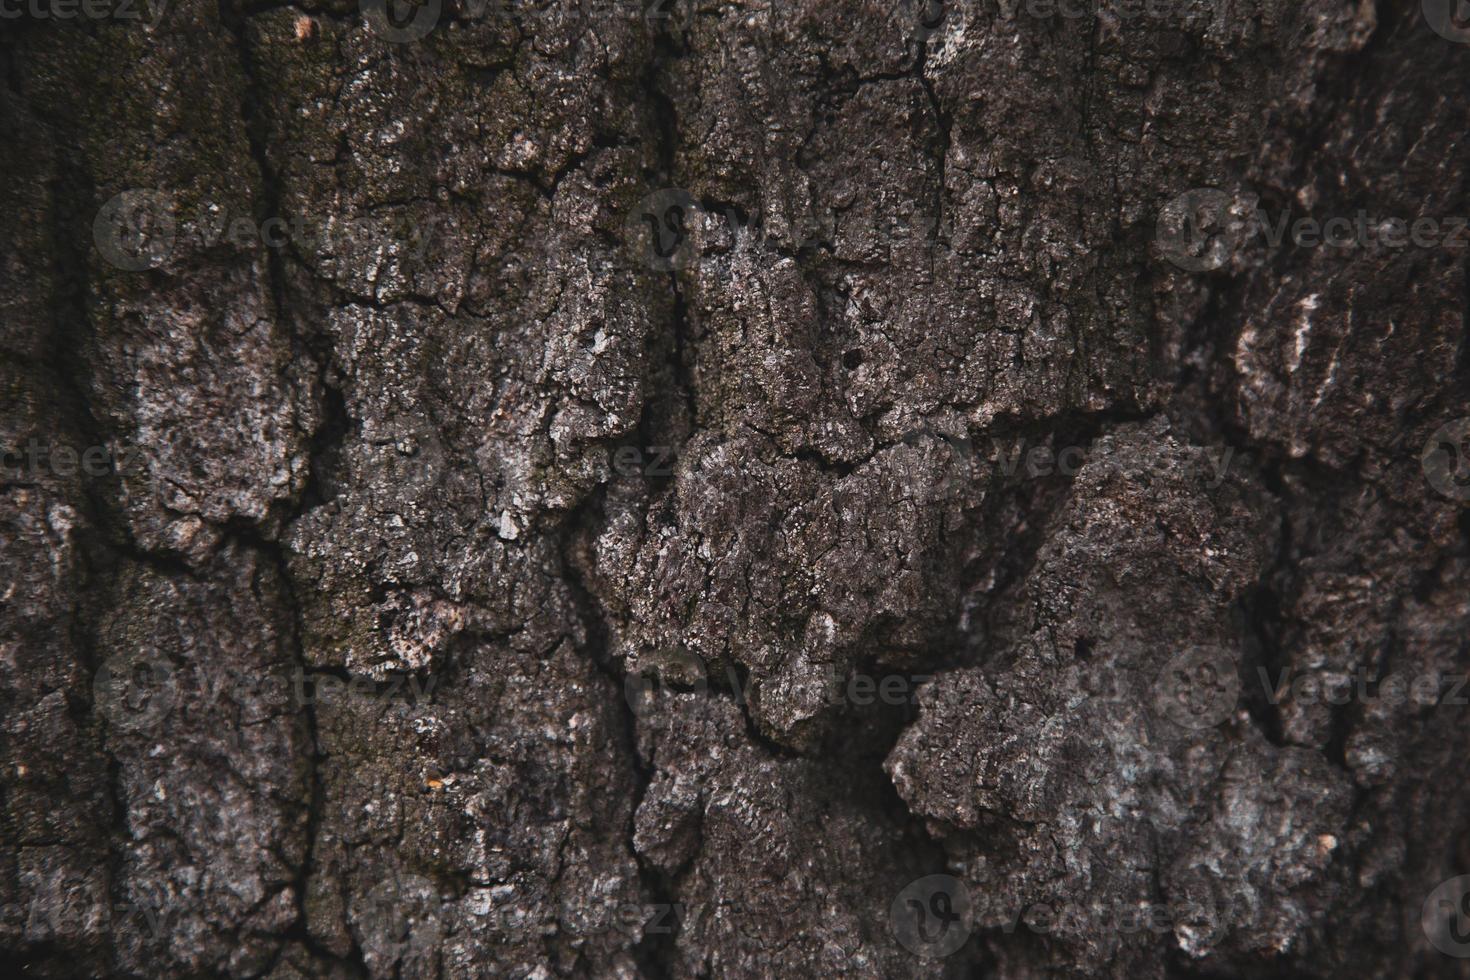 Texturhintergrund der braunen Baumrinde foto